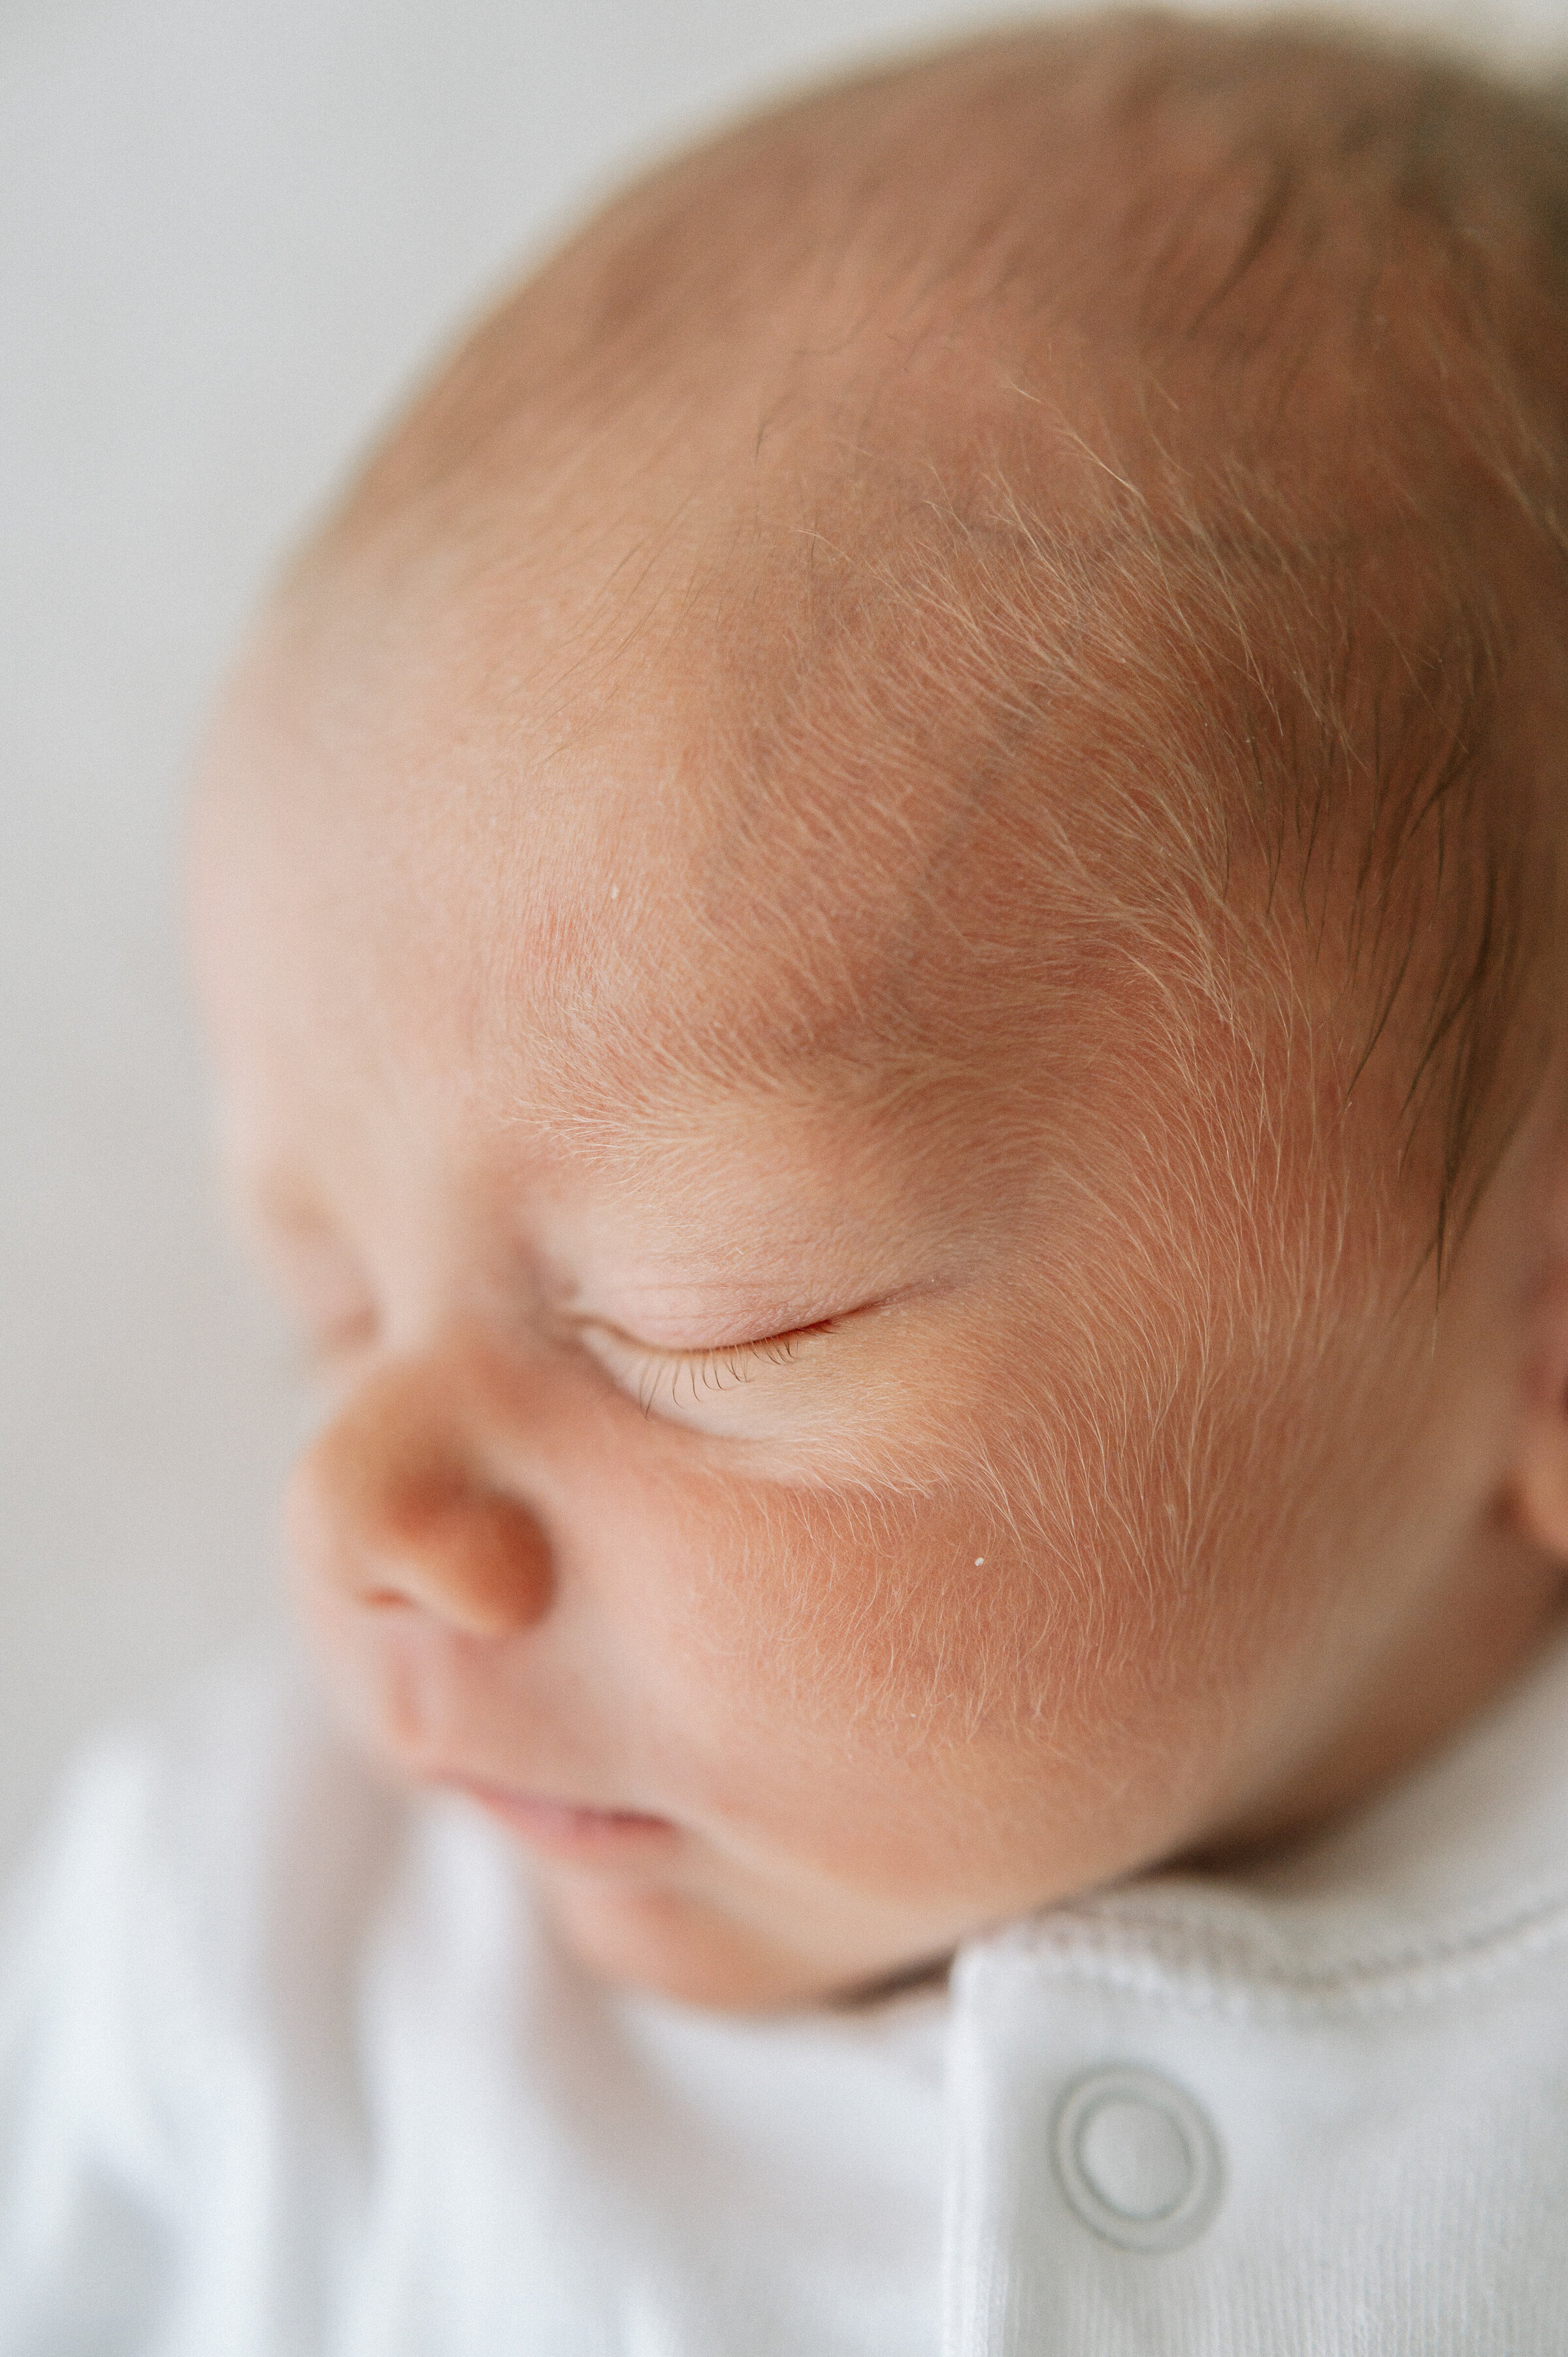 newborn photographer based in York - close up of newborn baby hairs